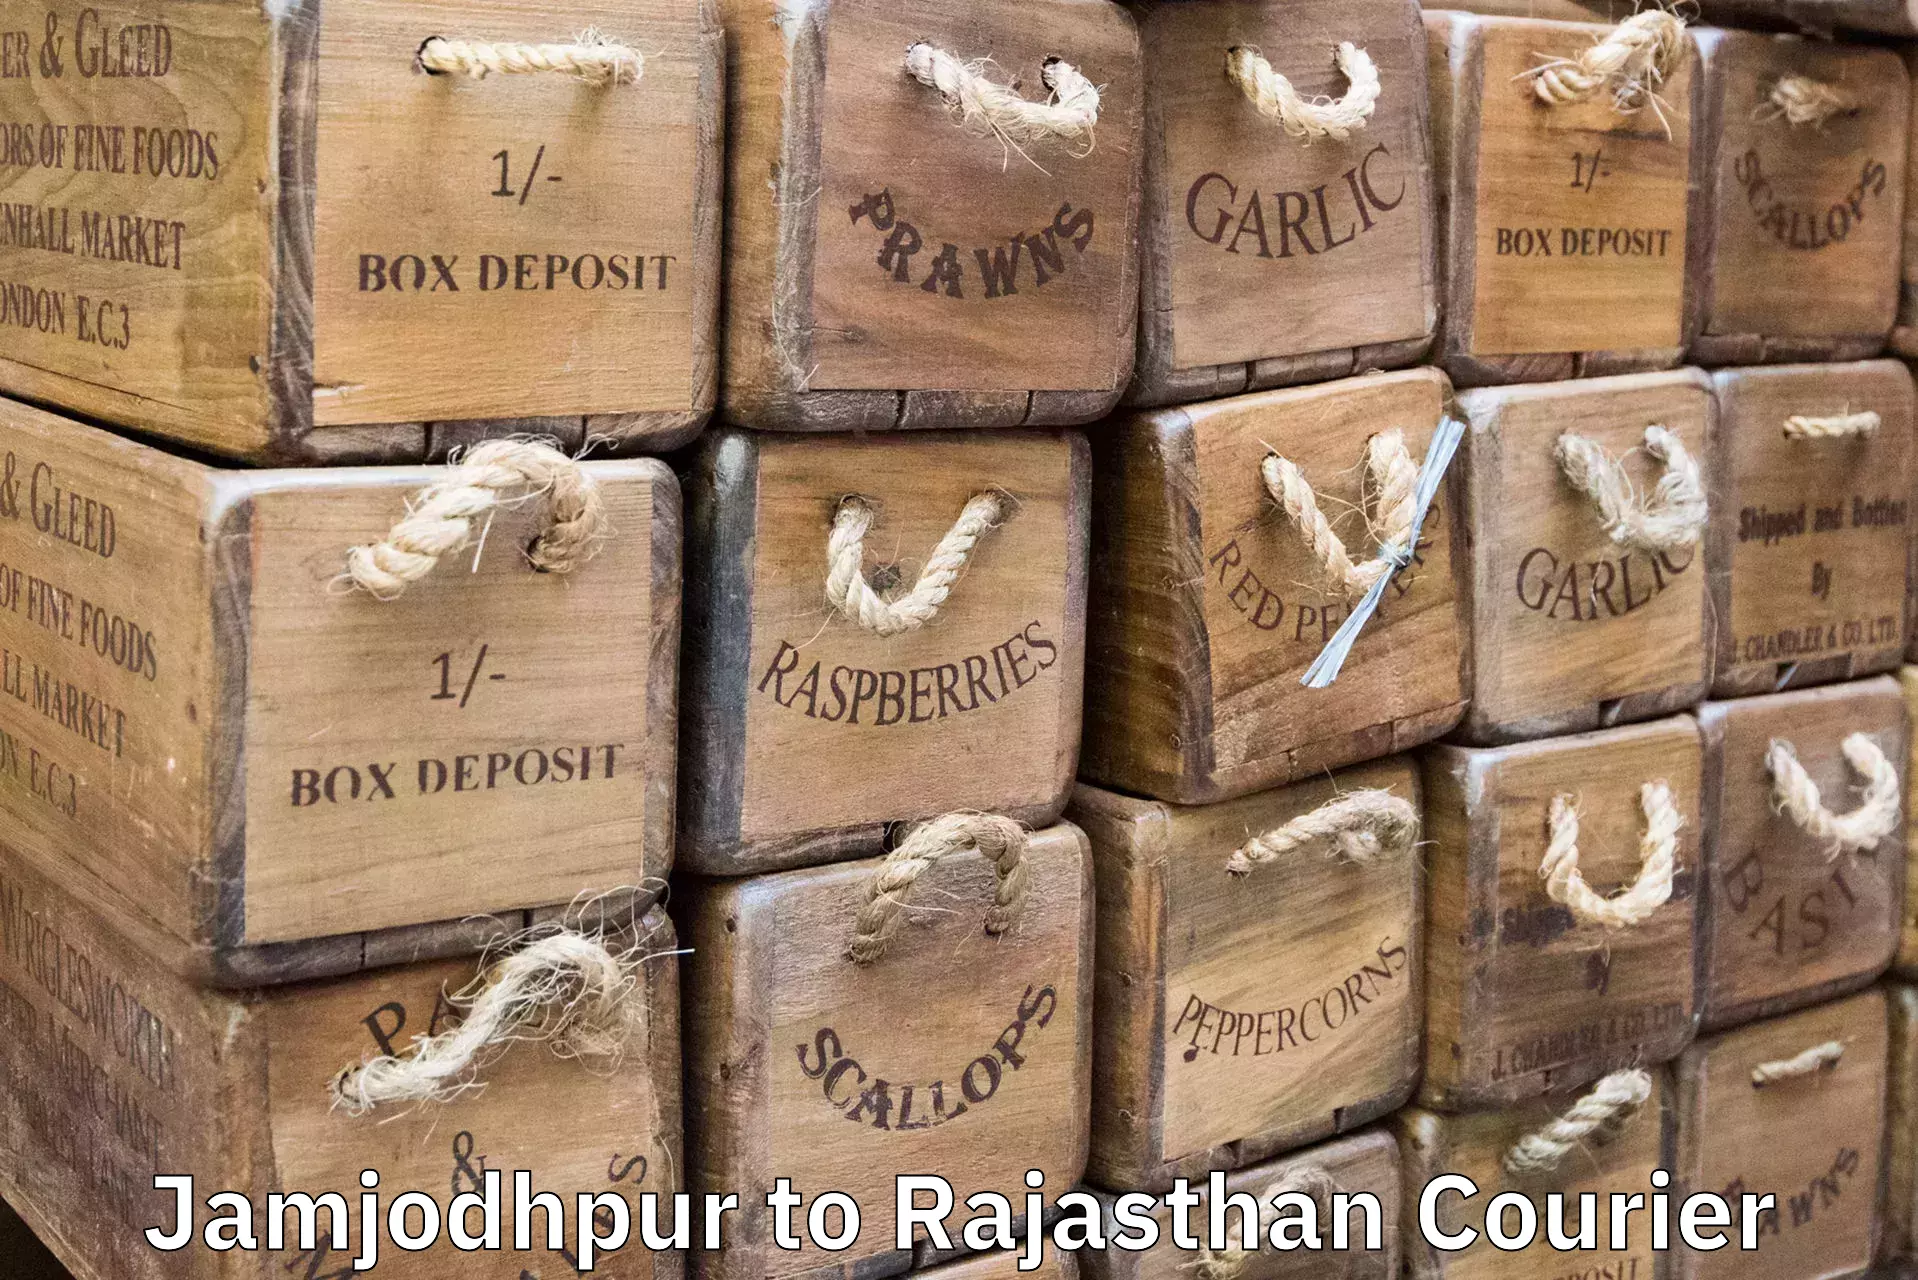 Same day luggage service Jamjodhpur to Rajgarh Rajasthan